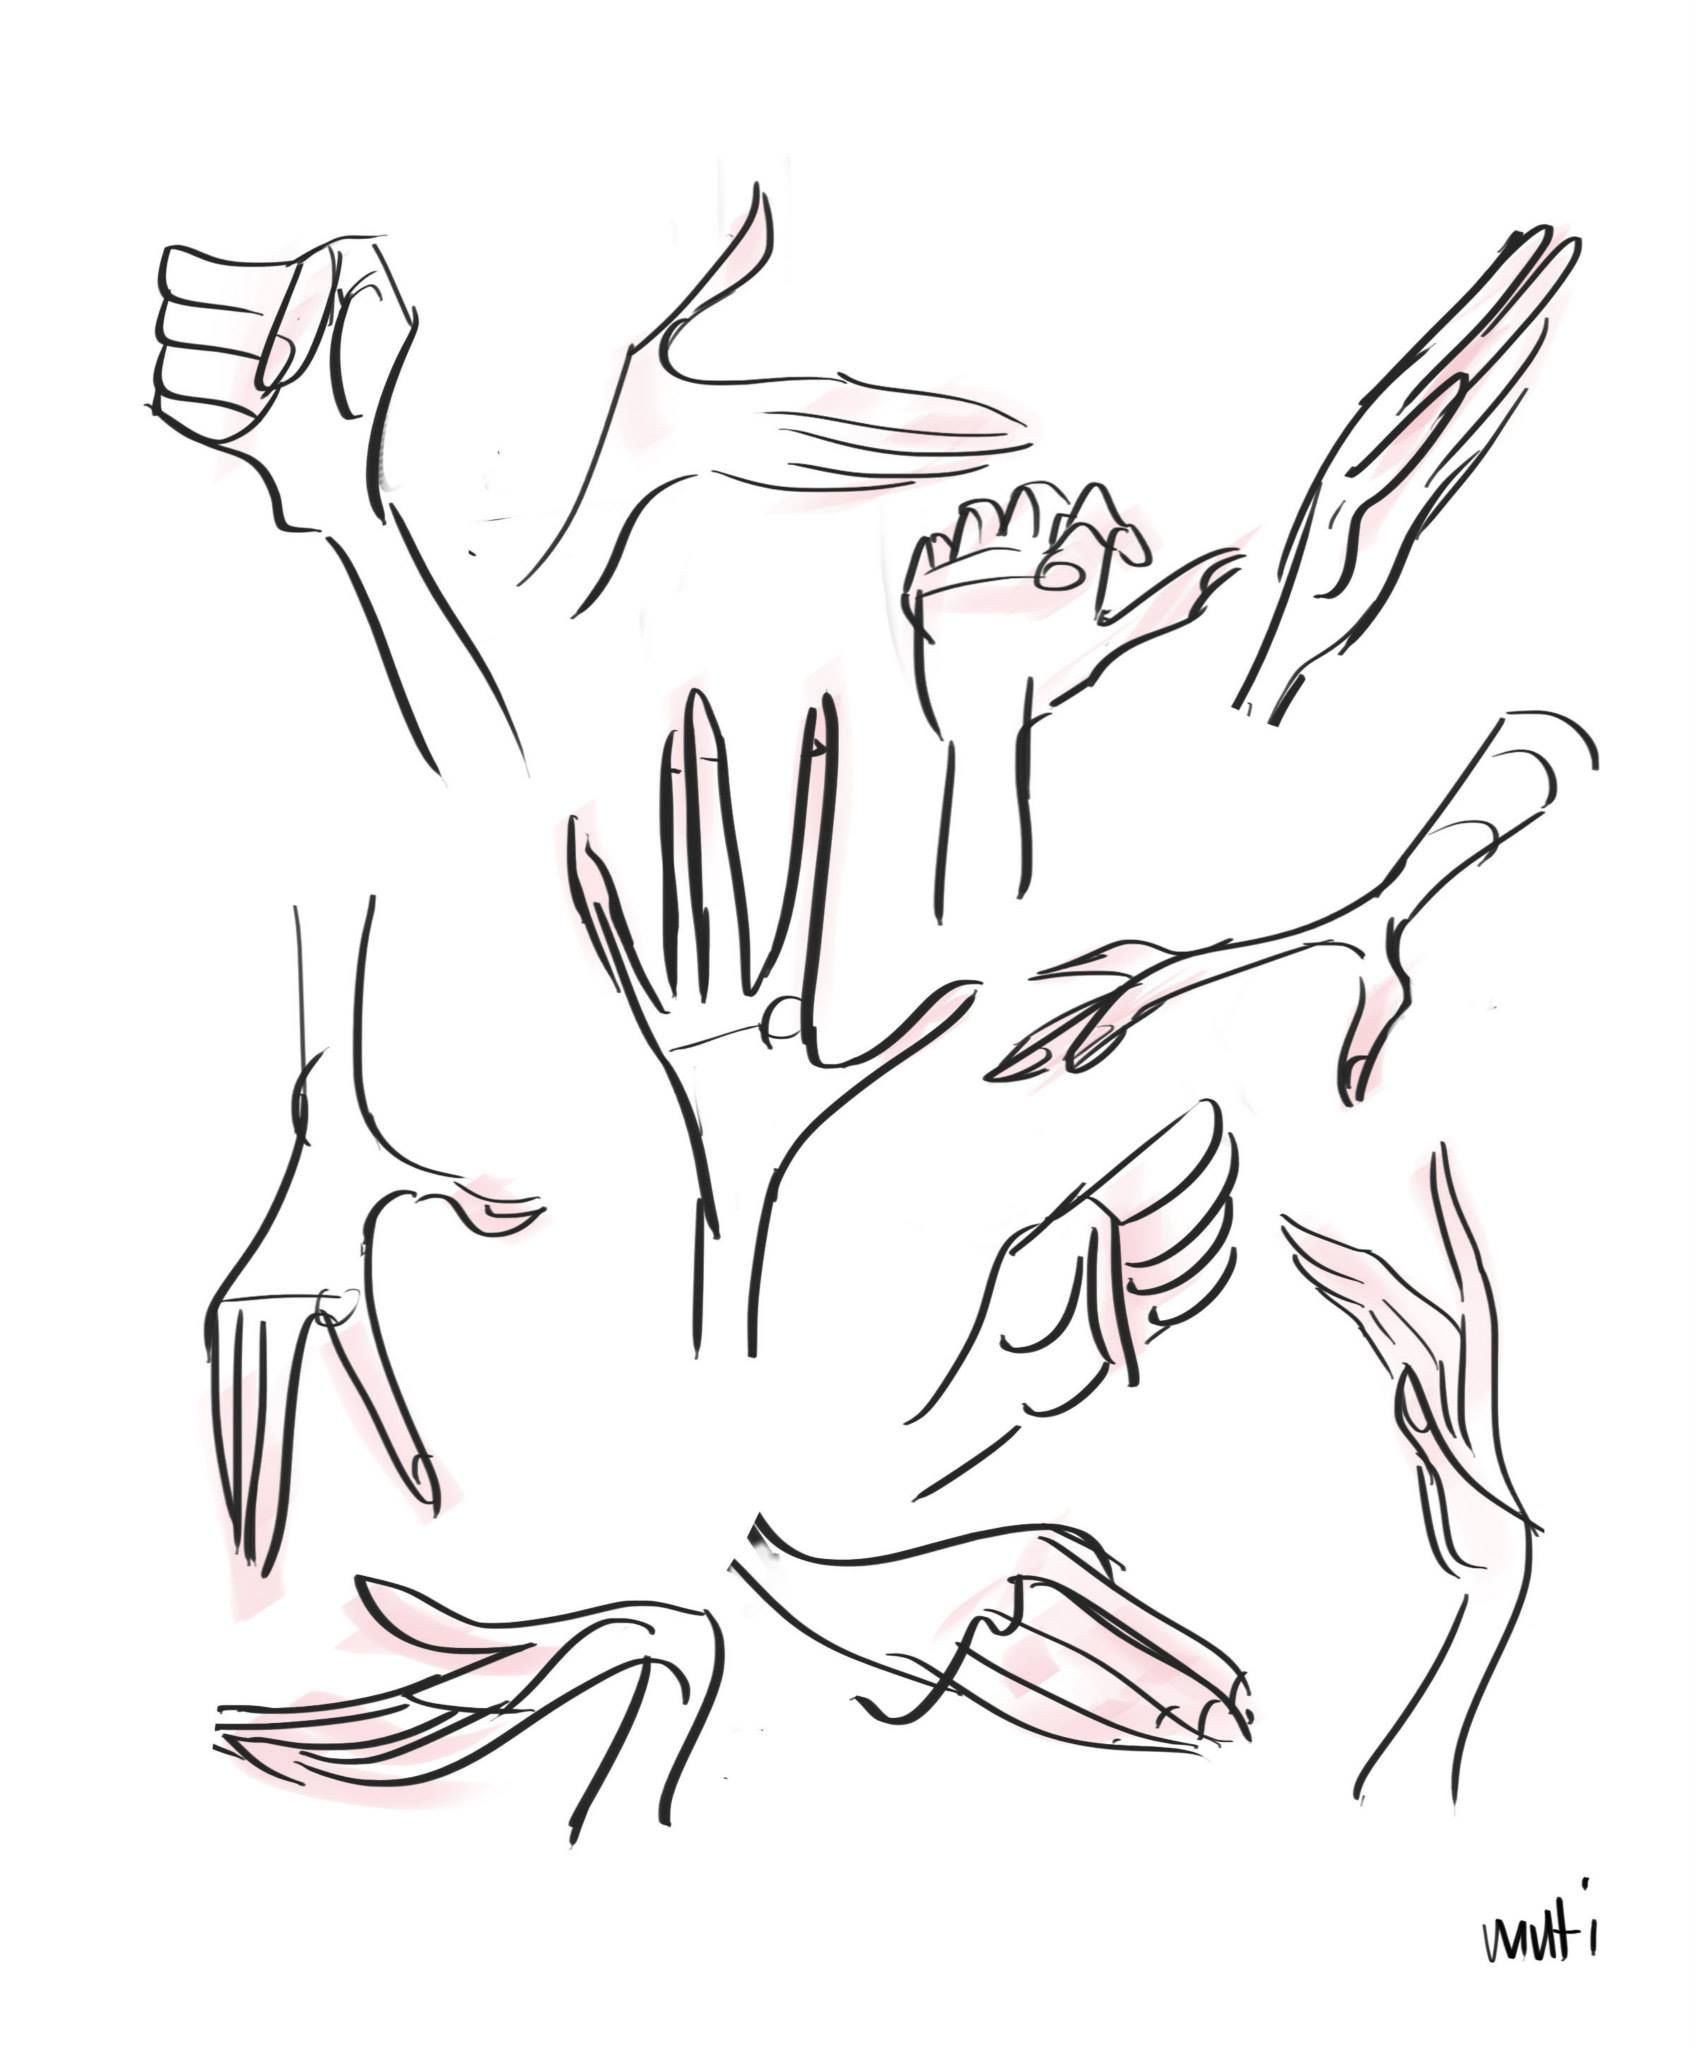 Референсы рук рисунок. Стилистика рисования рук. Стилизованная кисть руки. Разные стили рисования рук. Кисти рук референсы.